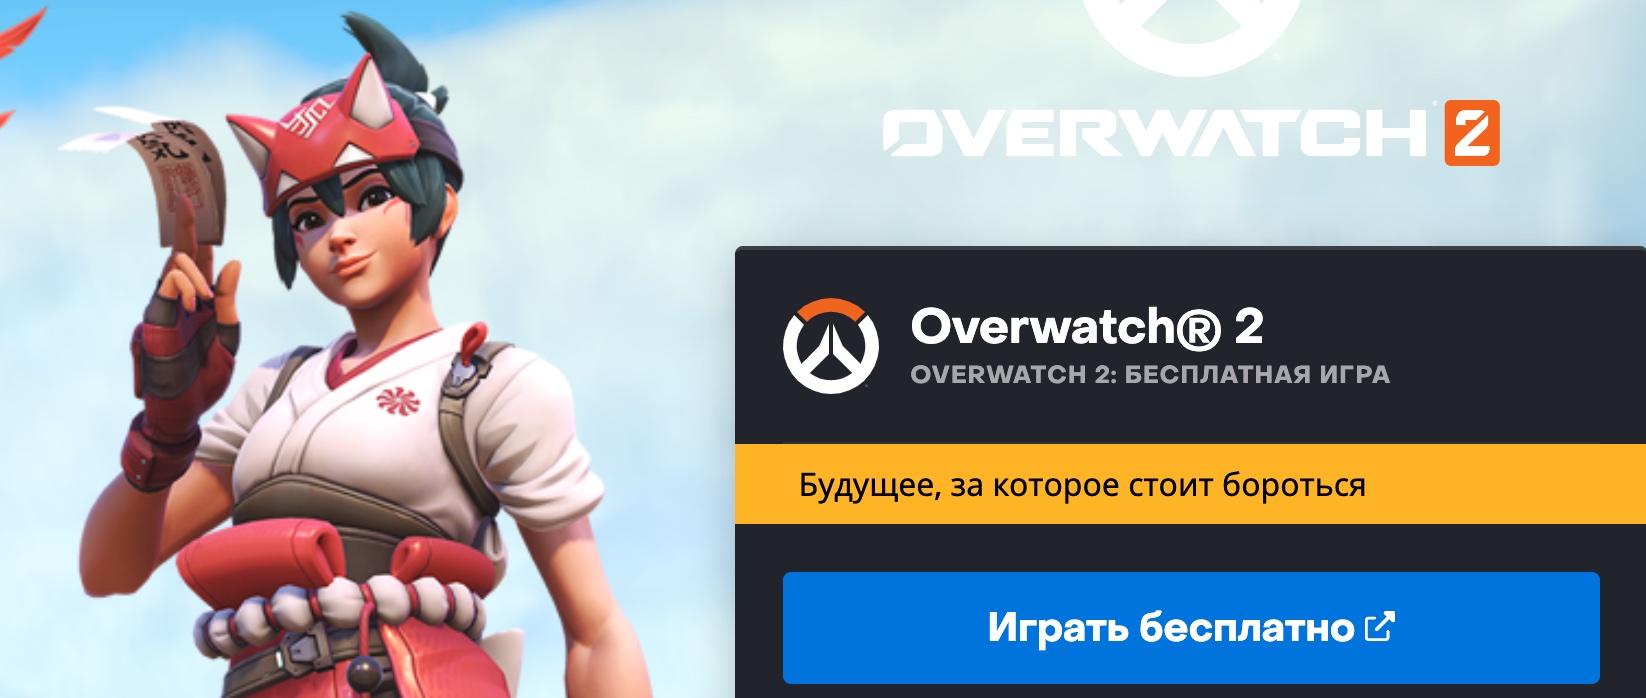 Overwatch 2 можно скачать бесплатно и поиграть в России